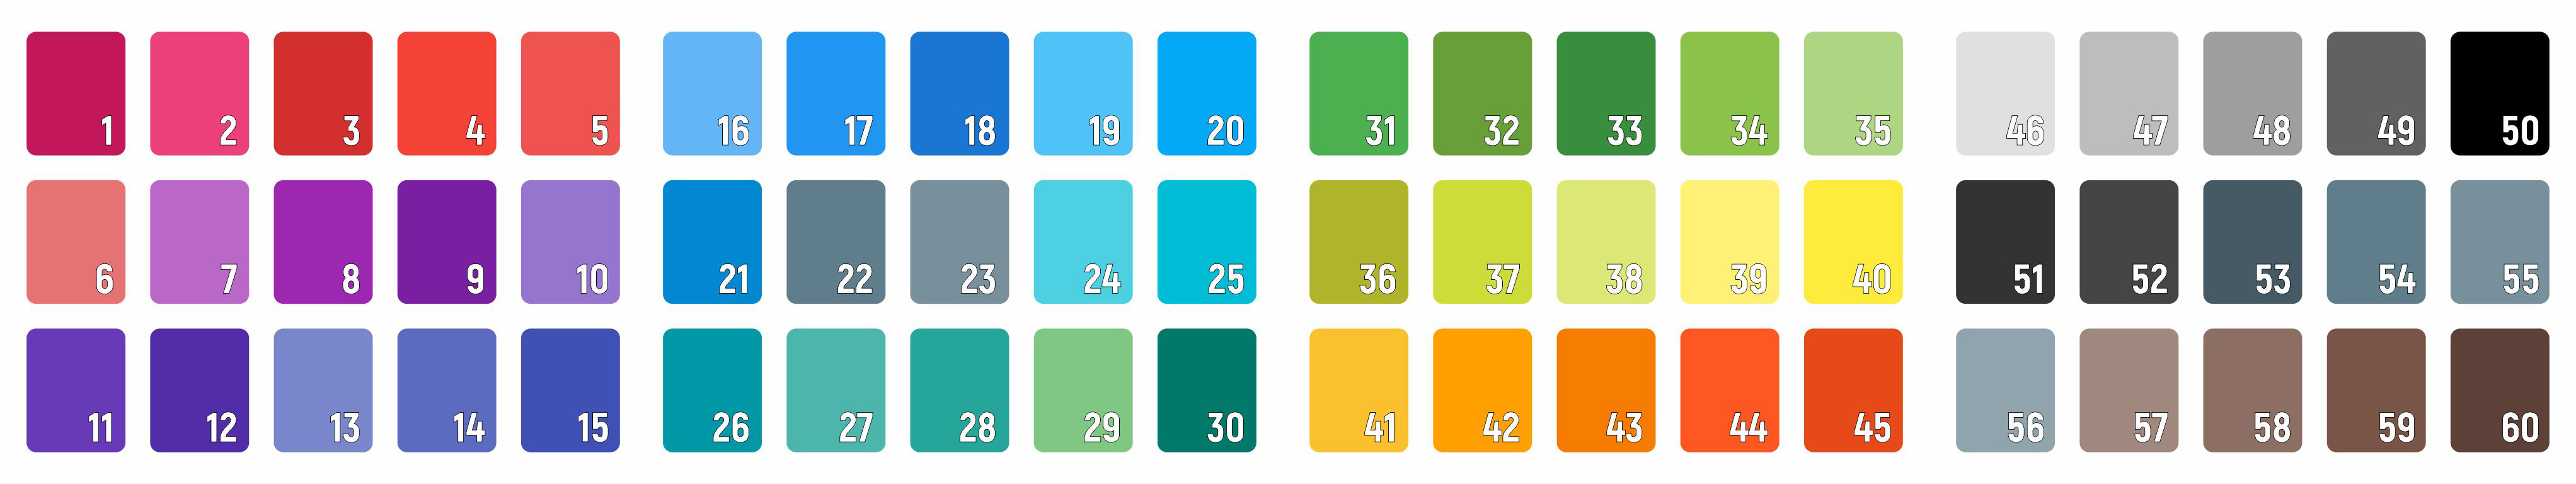 Цветовая шкала тканей для изготовления фартуков